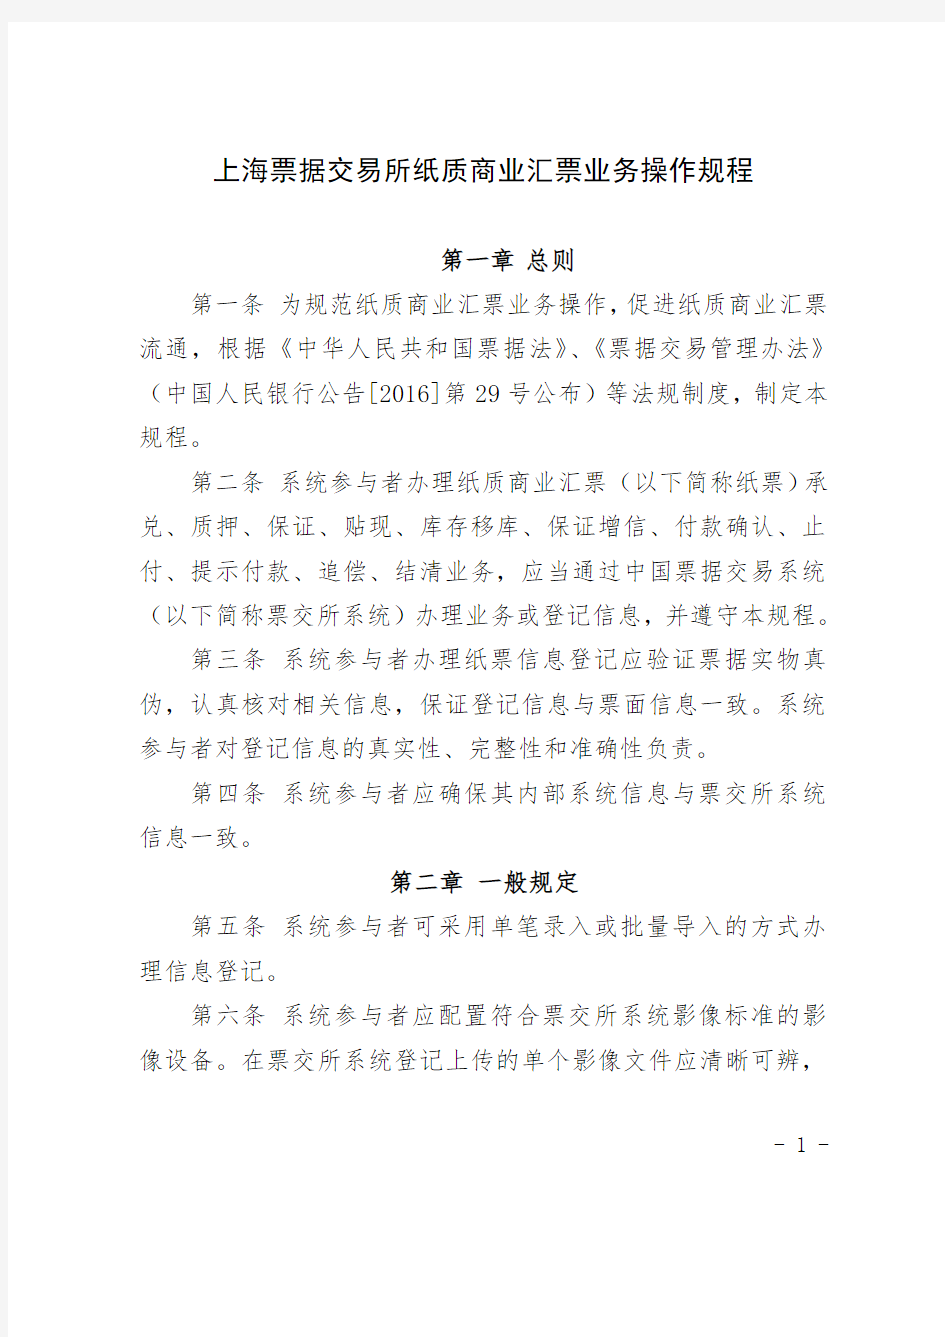 上海票据交易所纸质商业汇票业务操作规程